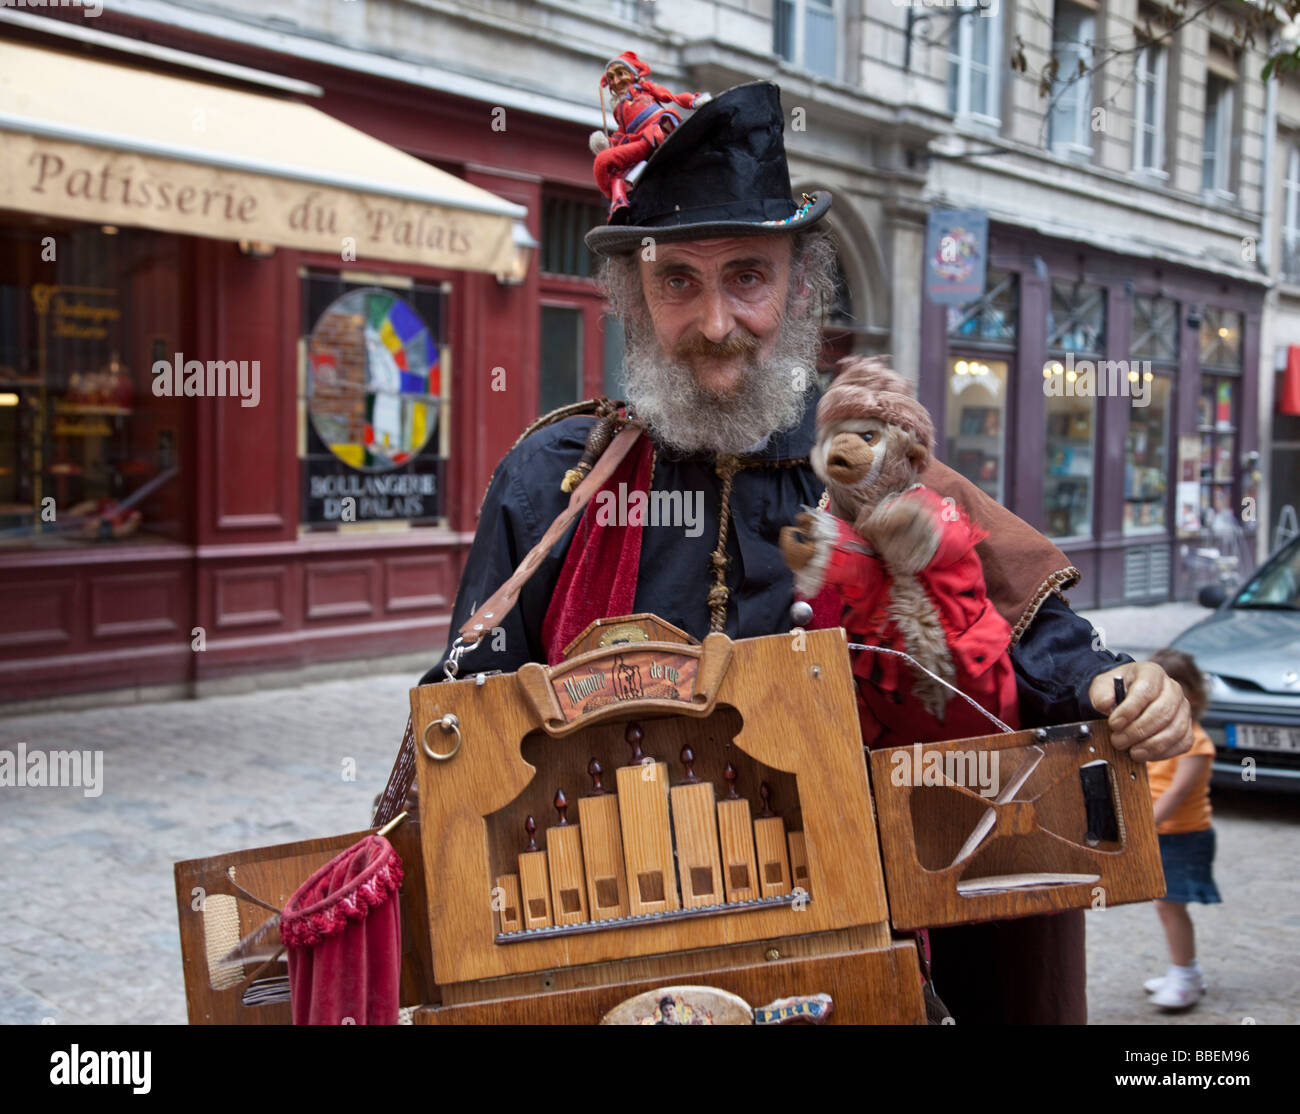 L'artista di strada con organo a mano nella storica costum con Vieux Lyon centro storico della città vecchia di Lione Rodano Alpi Francia Foto Stock